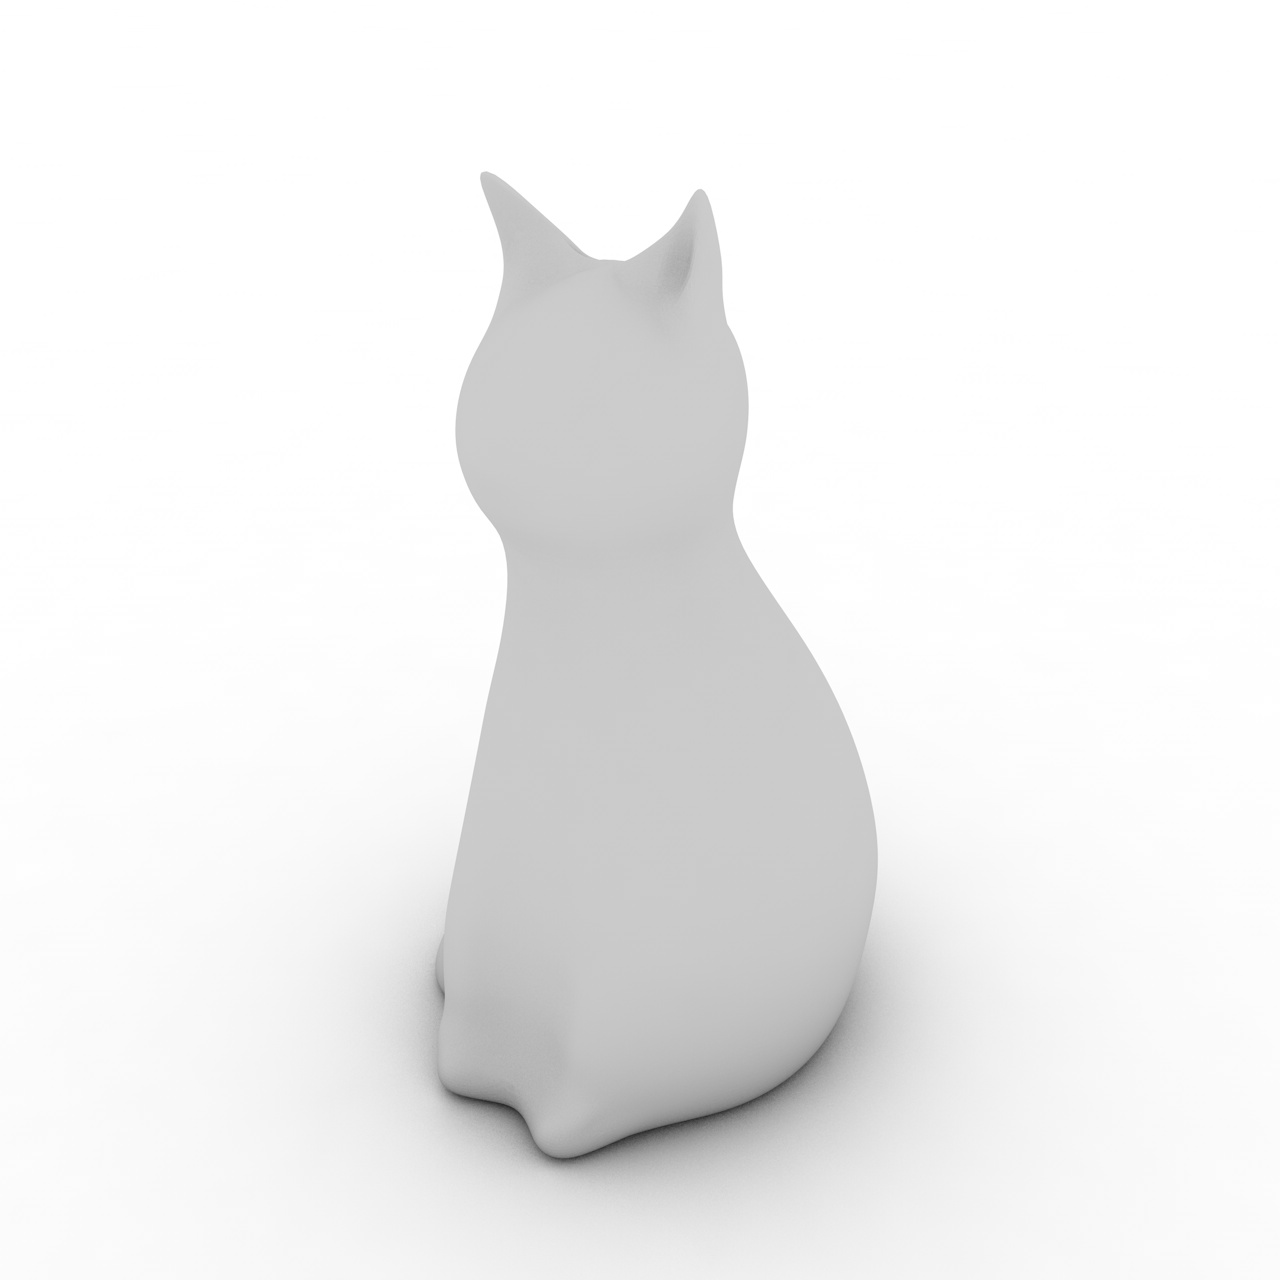 Modelo de impresión 3d abstracto Cat